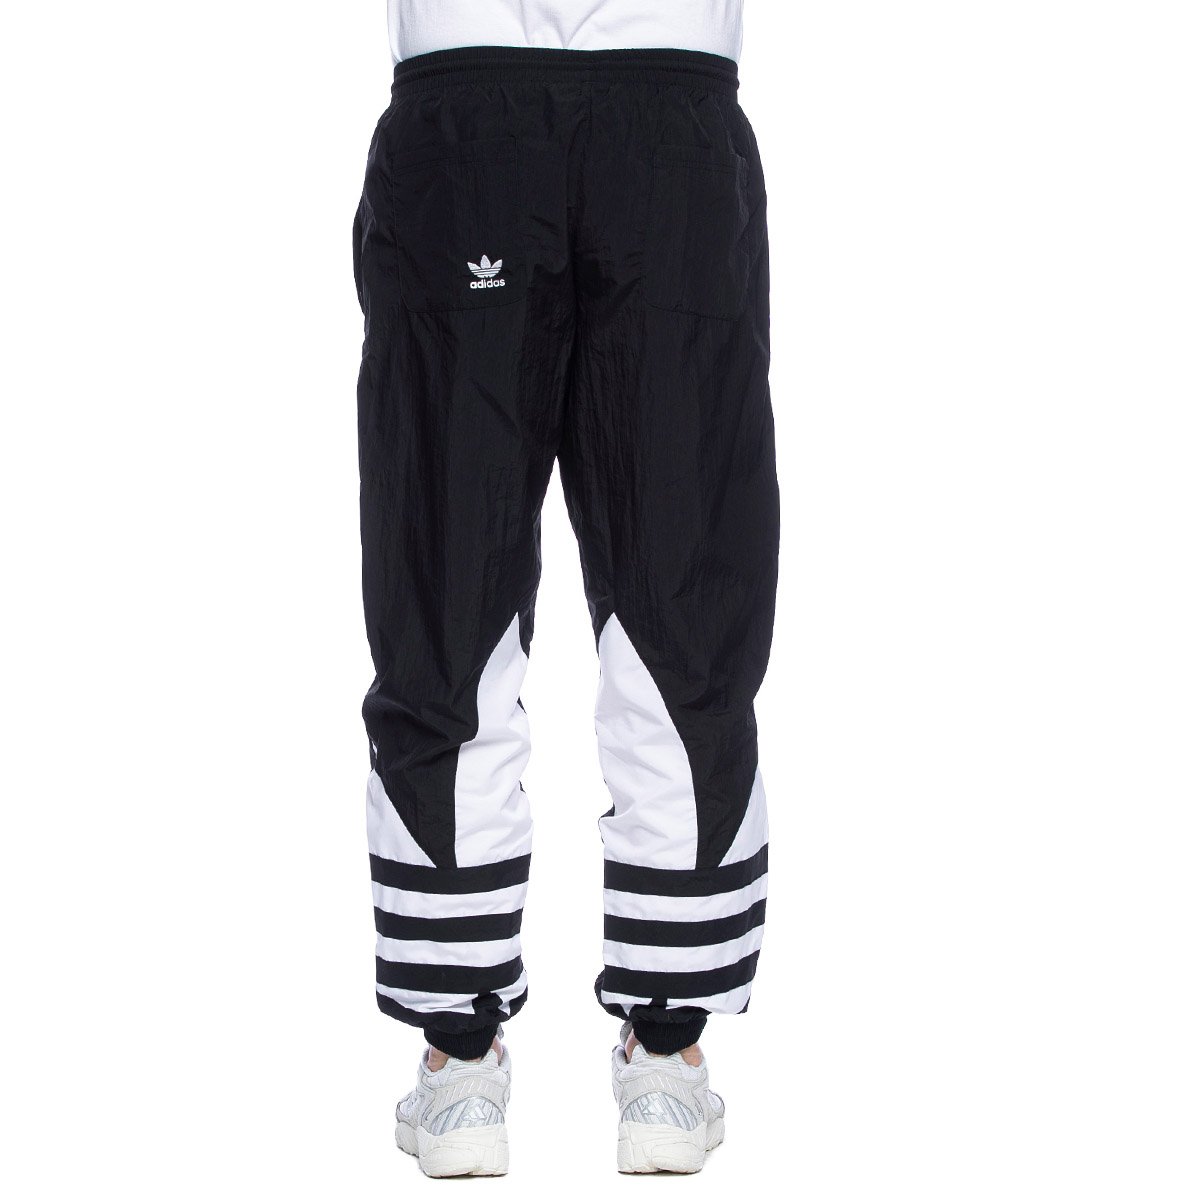 Adidas Originals sweatpants Big Trefoil Track Pants black | Bludshop.com